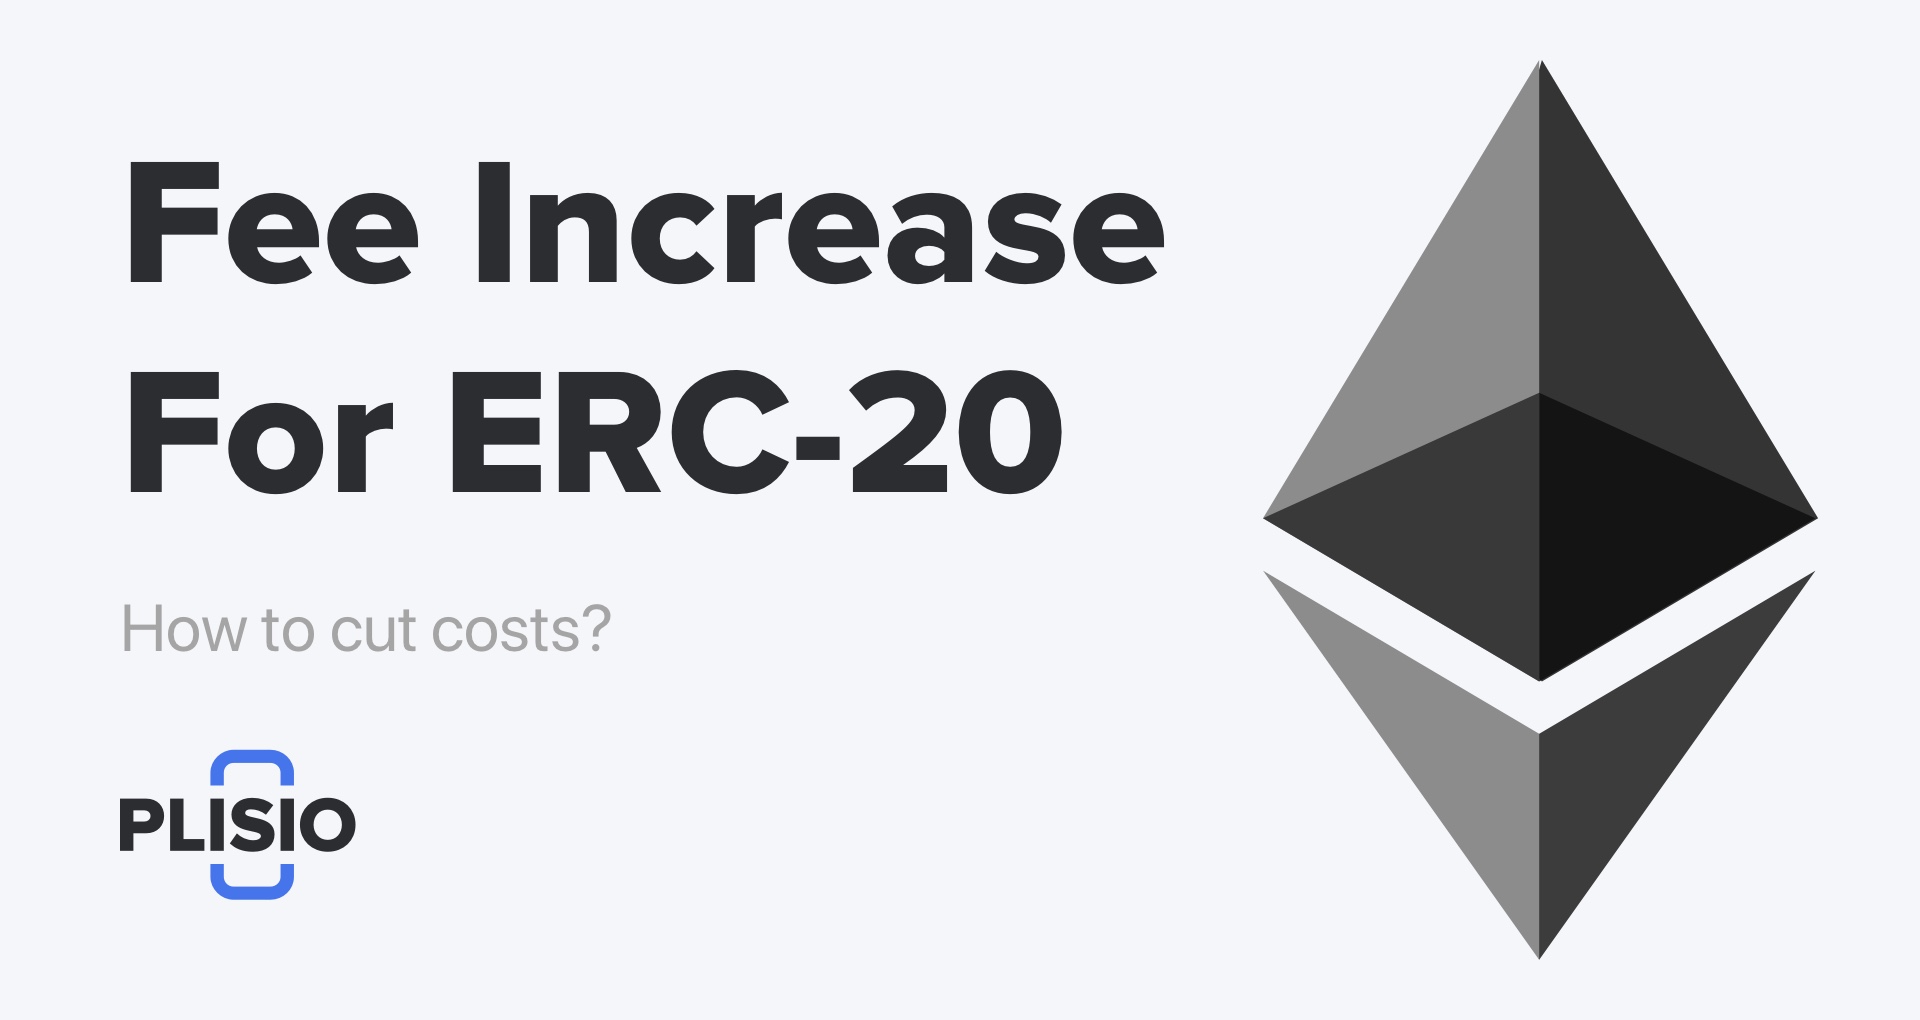 Tăng phí đối với Ethereum và mã thông báo ERC-20. Làm thế nào để cắt giảm chi phí?